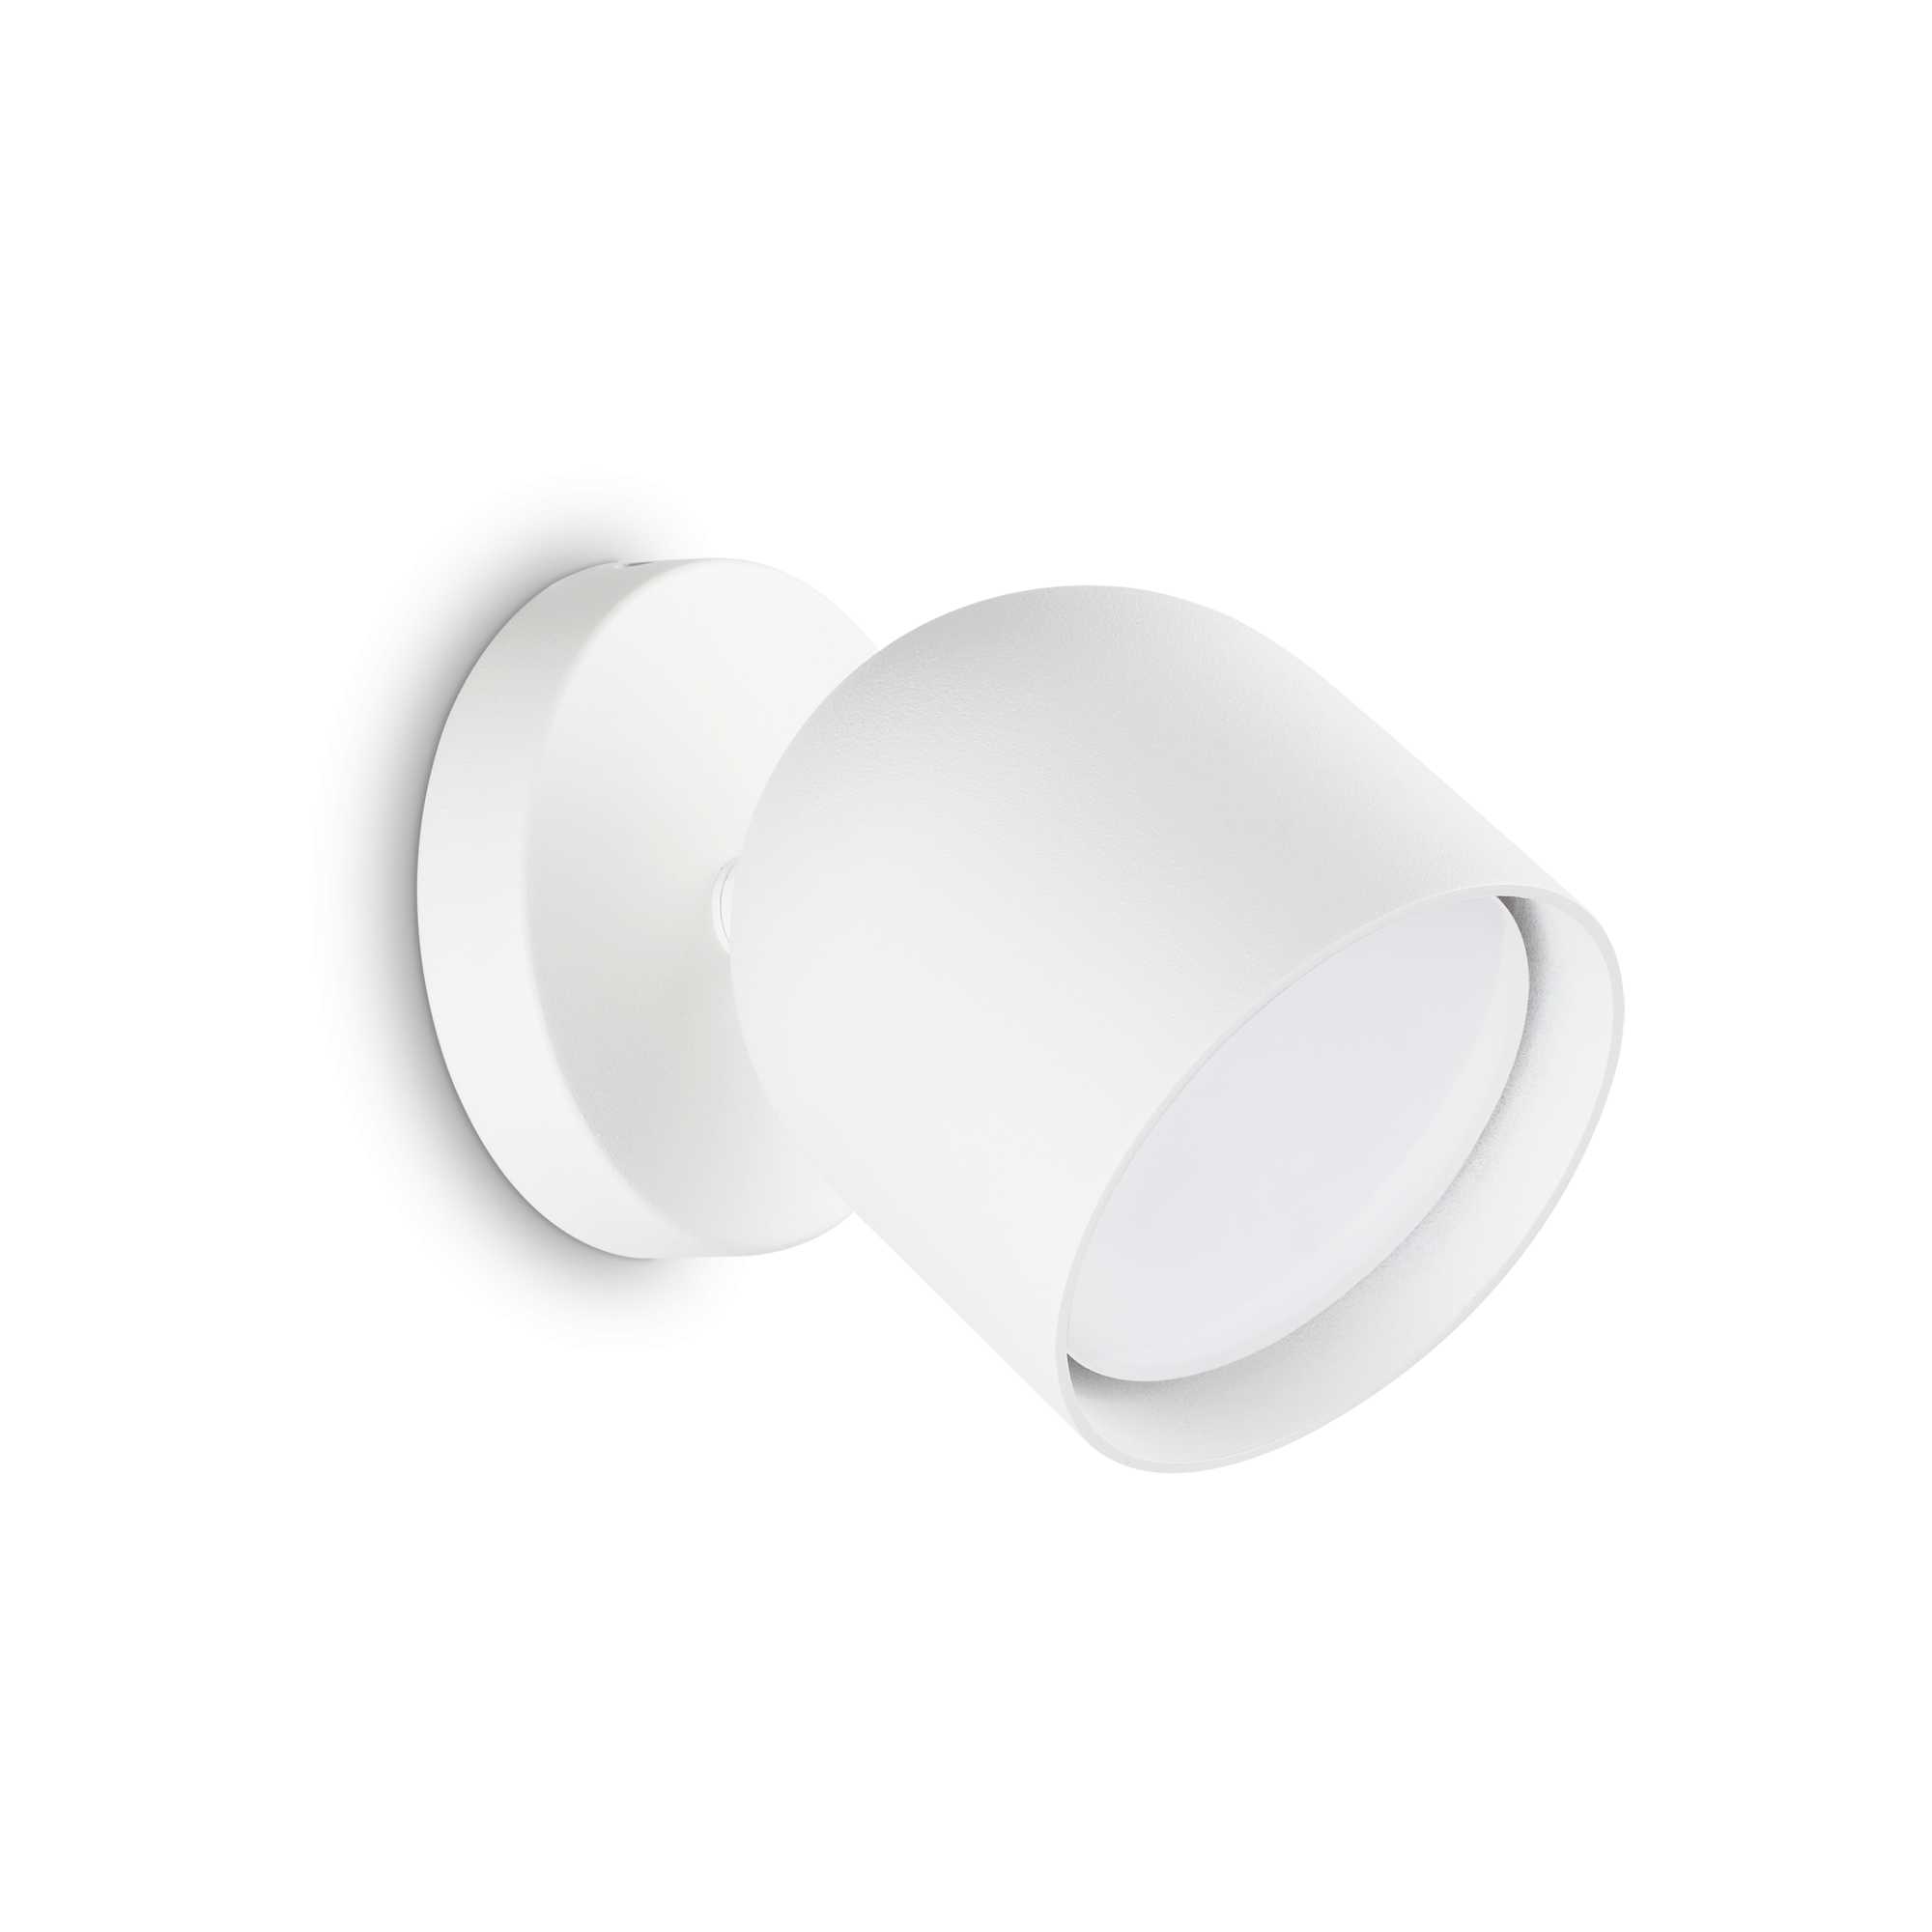 AD hotelska oprema Zidna lampa Dodo ap1- Bijele boje slika proizvoda